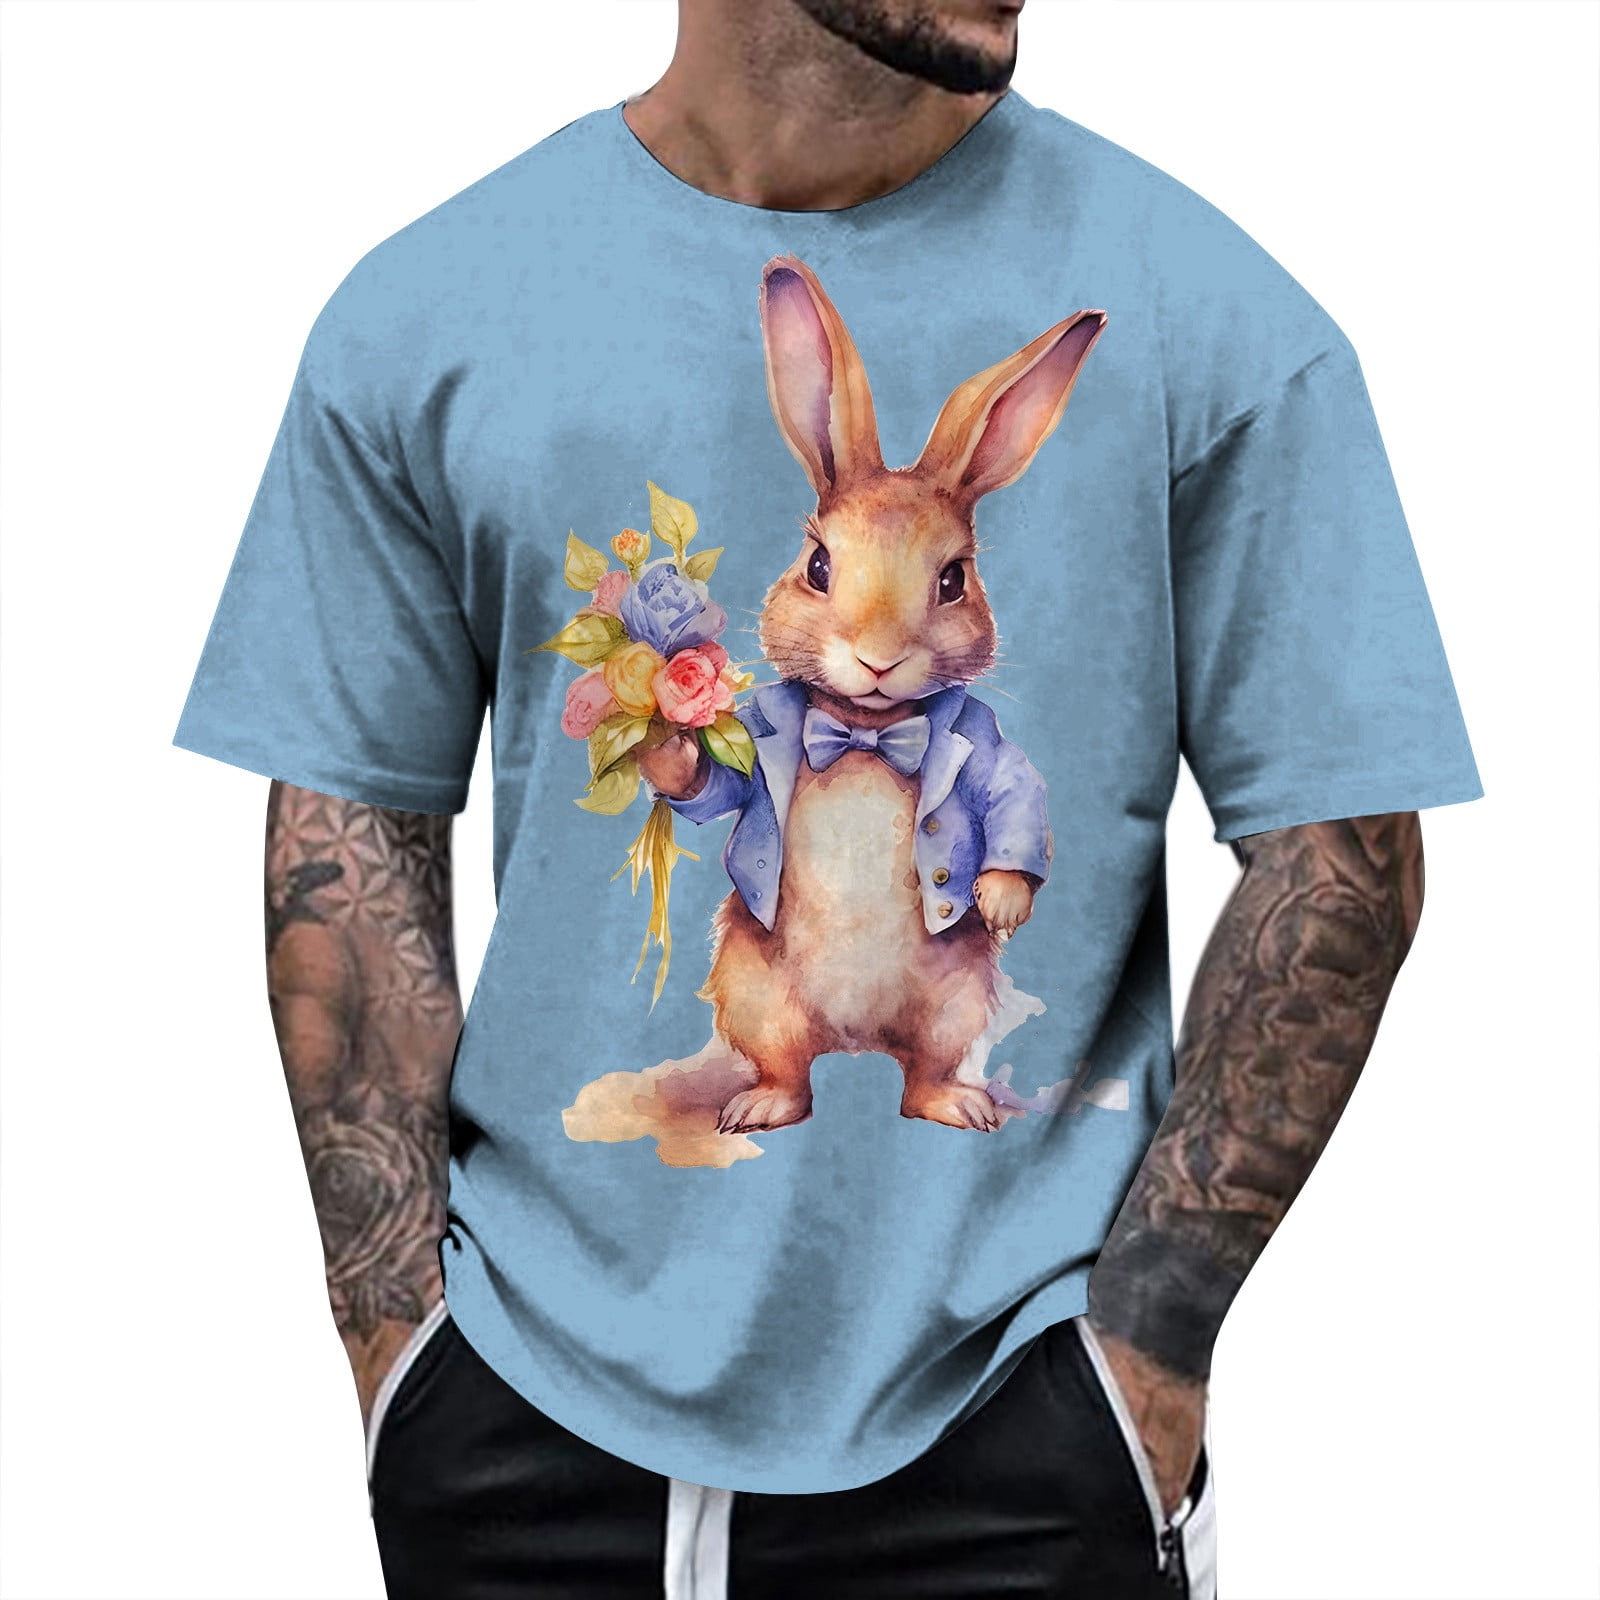 AdBFJAF Compression Shirt Men Short Sleeve White Men's Easter Rabbit ...